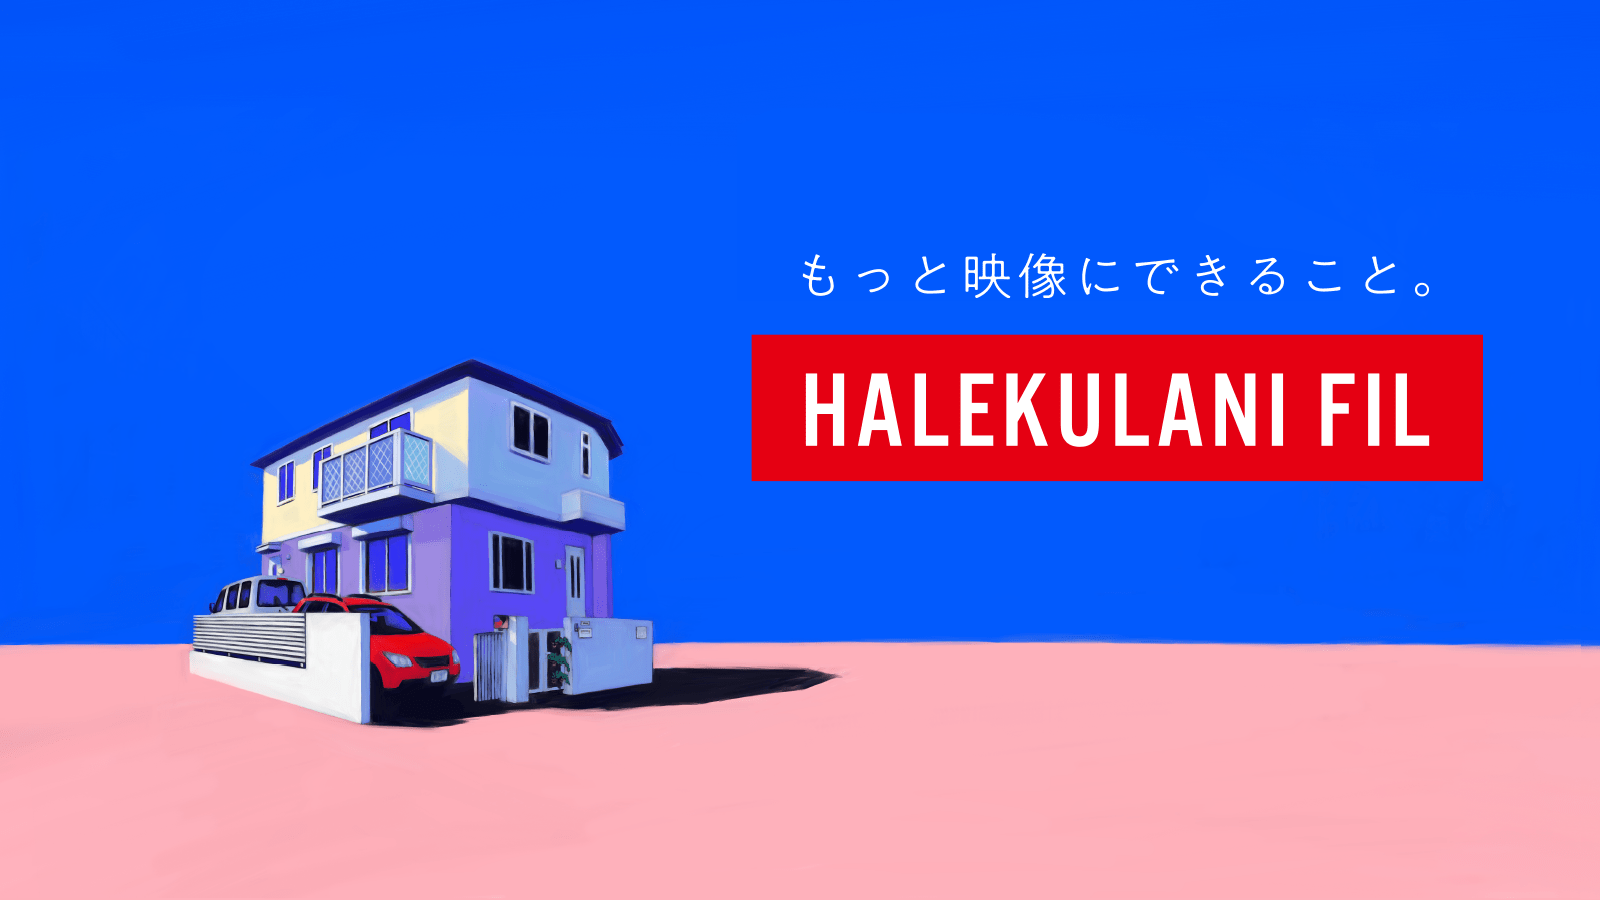 ハレクラニ フィル | HALEKULANI FIL